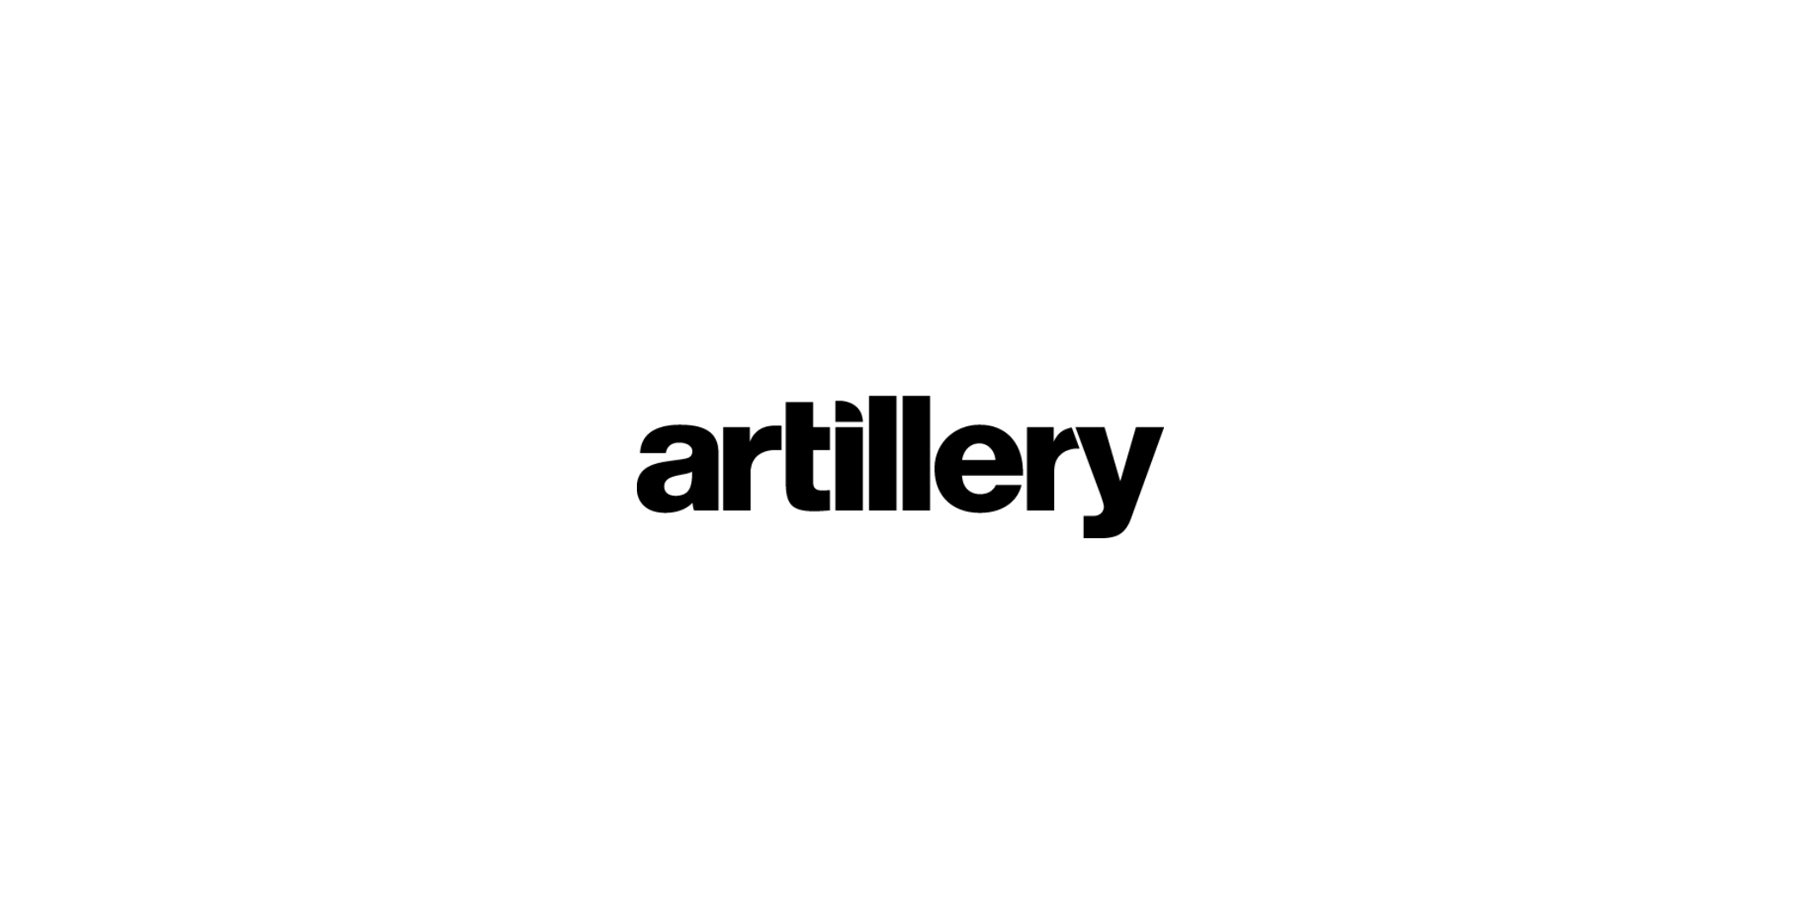 Artillery_Single.jpg